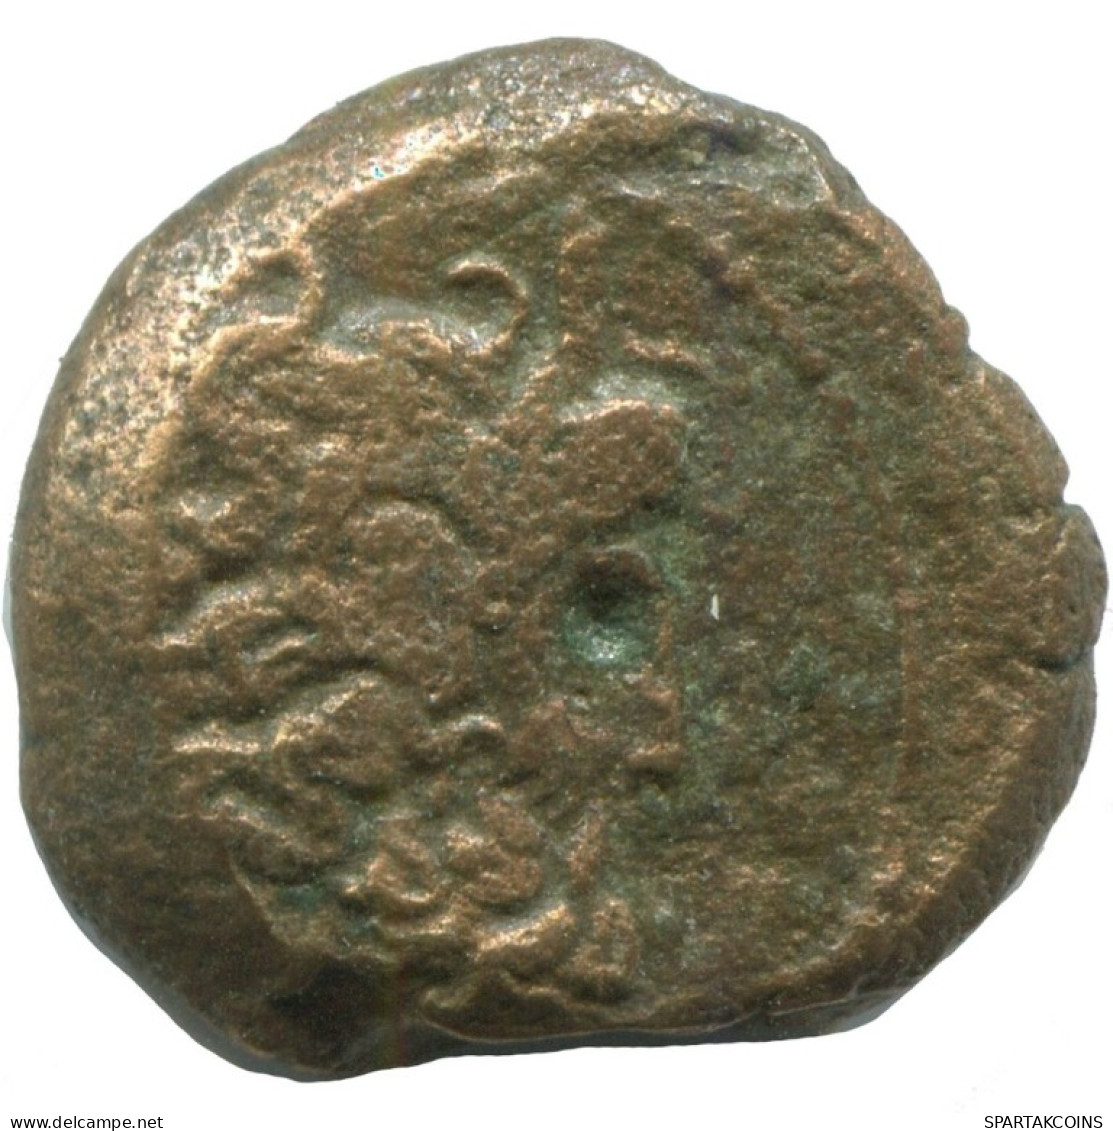 Auténtico ORIGINAL GRIEGO ANTIGUO Moneda 6.3g/19mm #AF914.12.E.A - Grecques